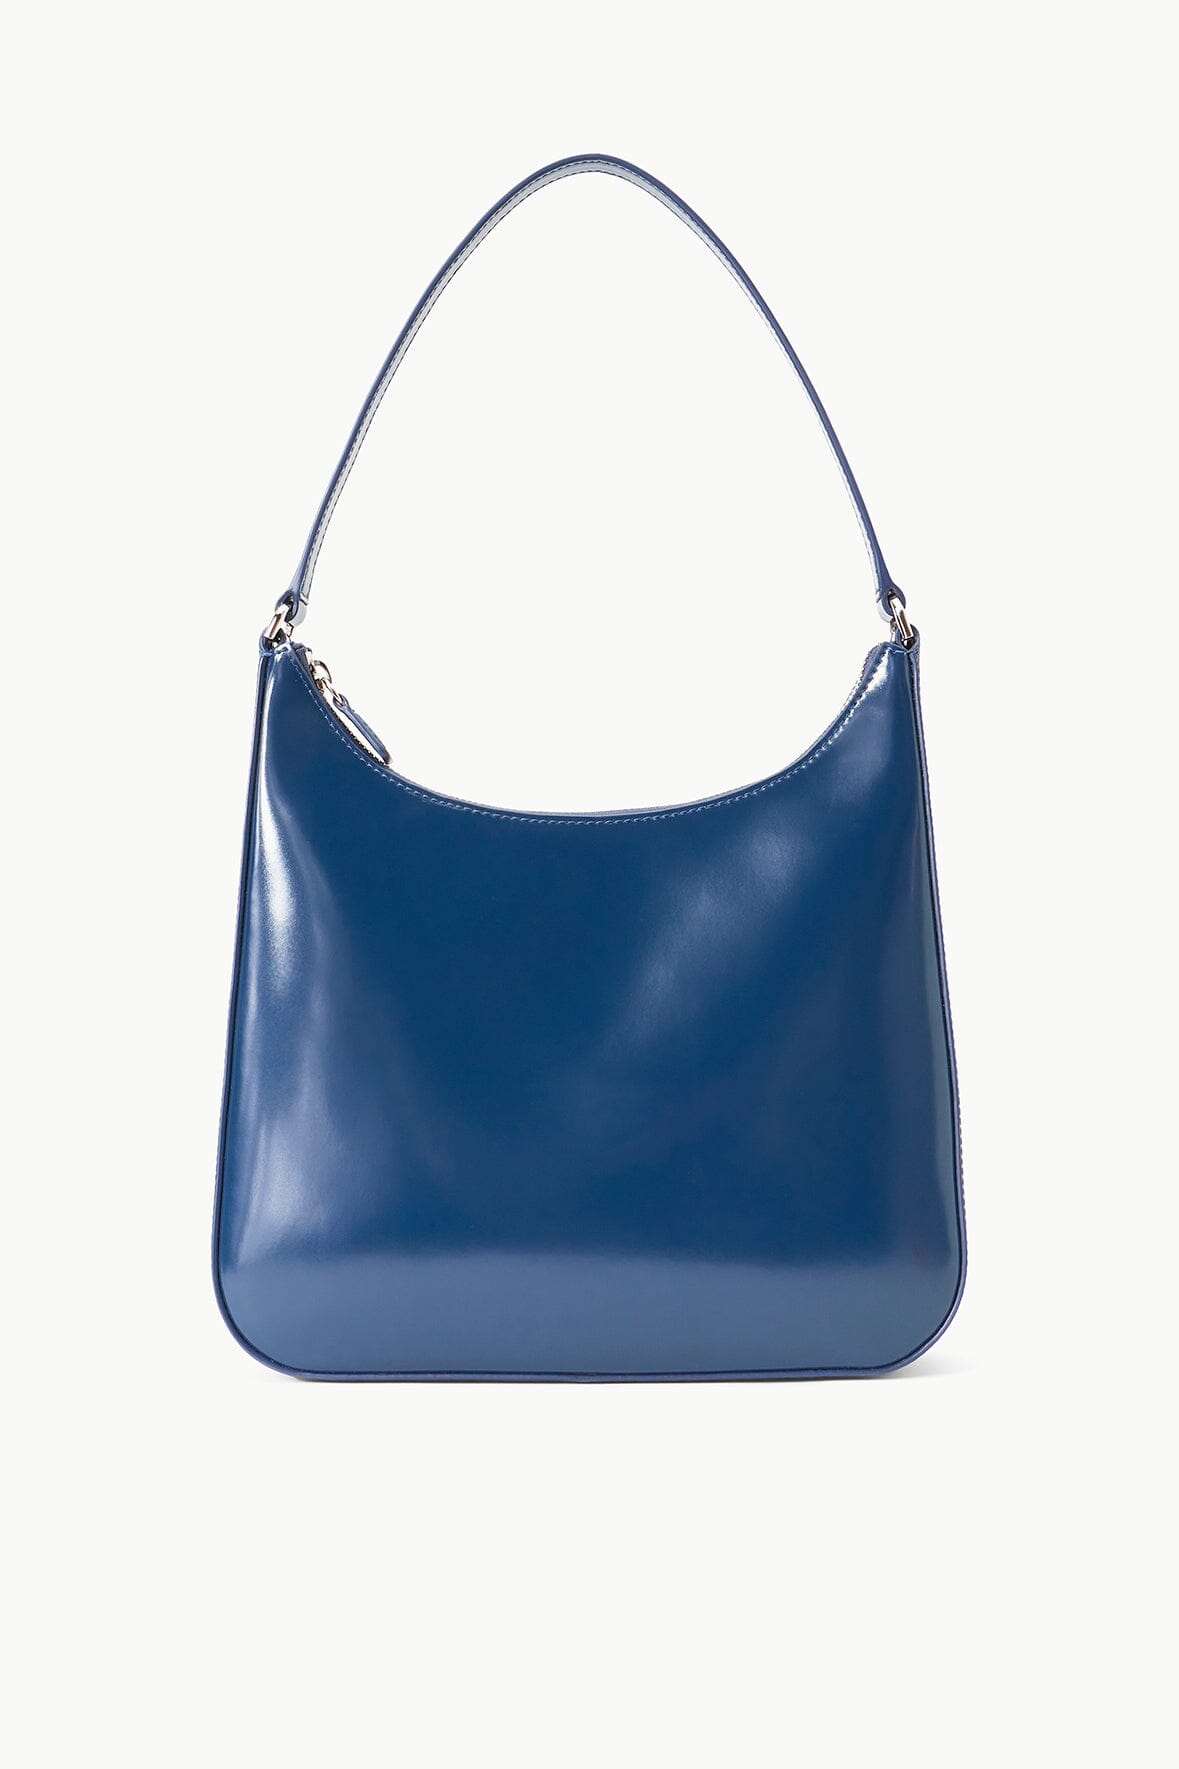 Blue Croc Print Shopper Bag / Blue Leather Bag / Blue -  Sweden